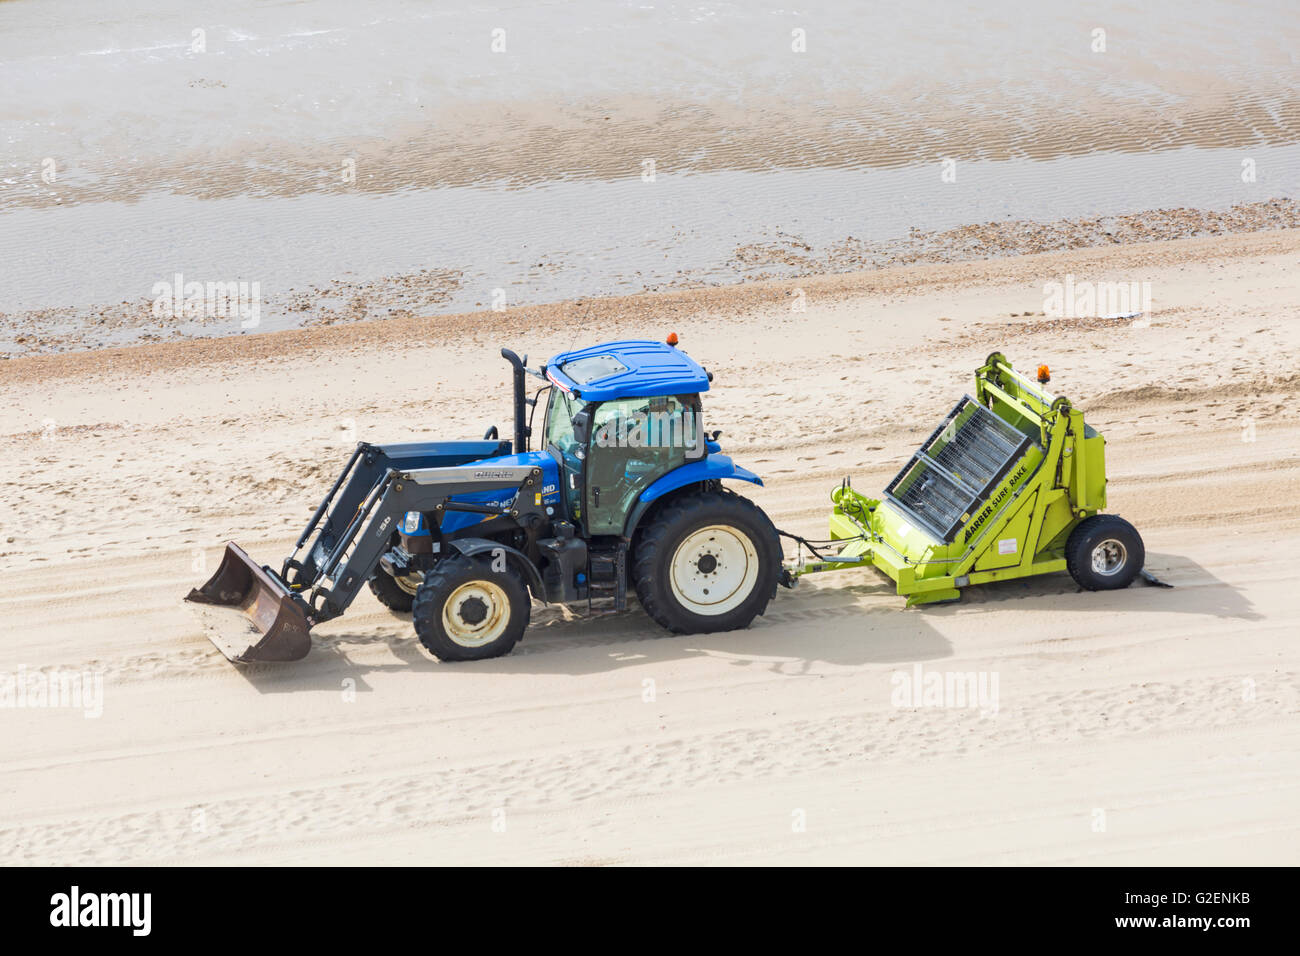 Bournemouth, Dorset, UK 30. Mai 2016. Halten die Strände sauber in Bournemouth - sand Digger und Surf Rake Umzug und Reinigung Credit: Carolyn Jenkins/Alamy Live News Stockfoto